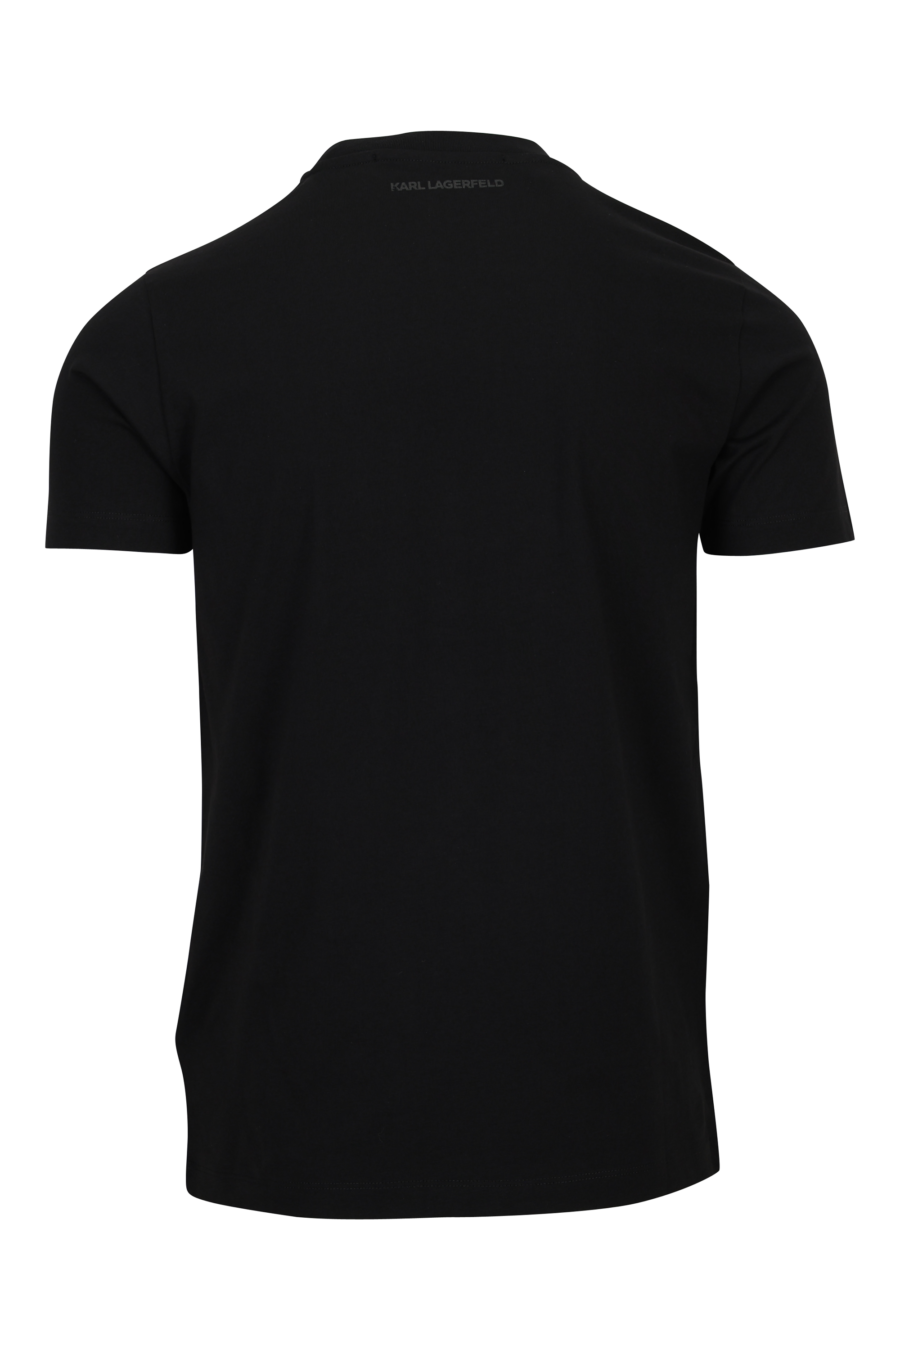 Camiseta negra con maxilogo azul centrado - 4062226962506 1